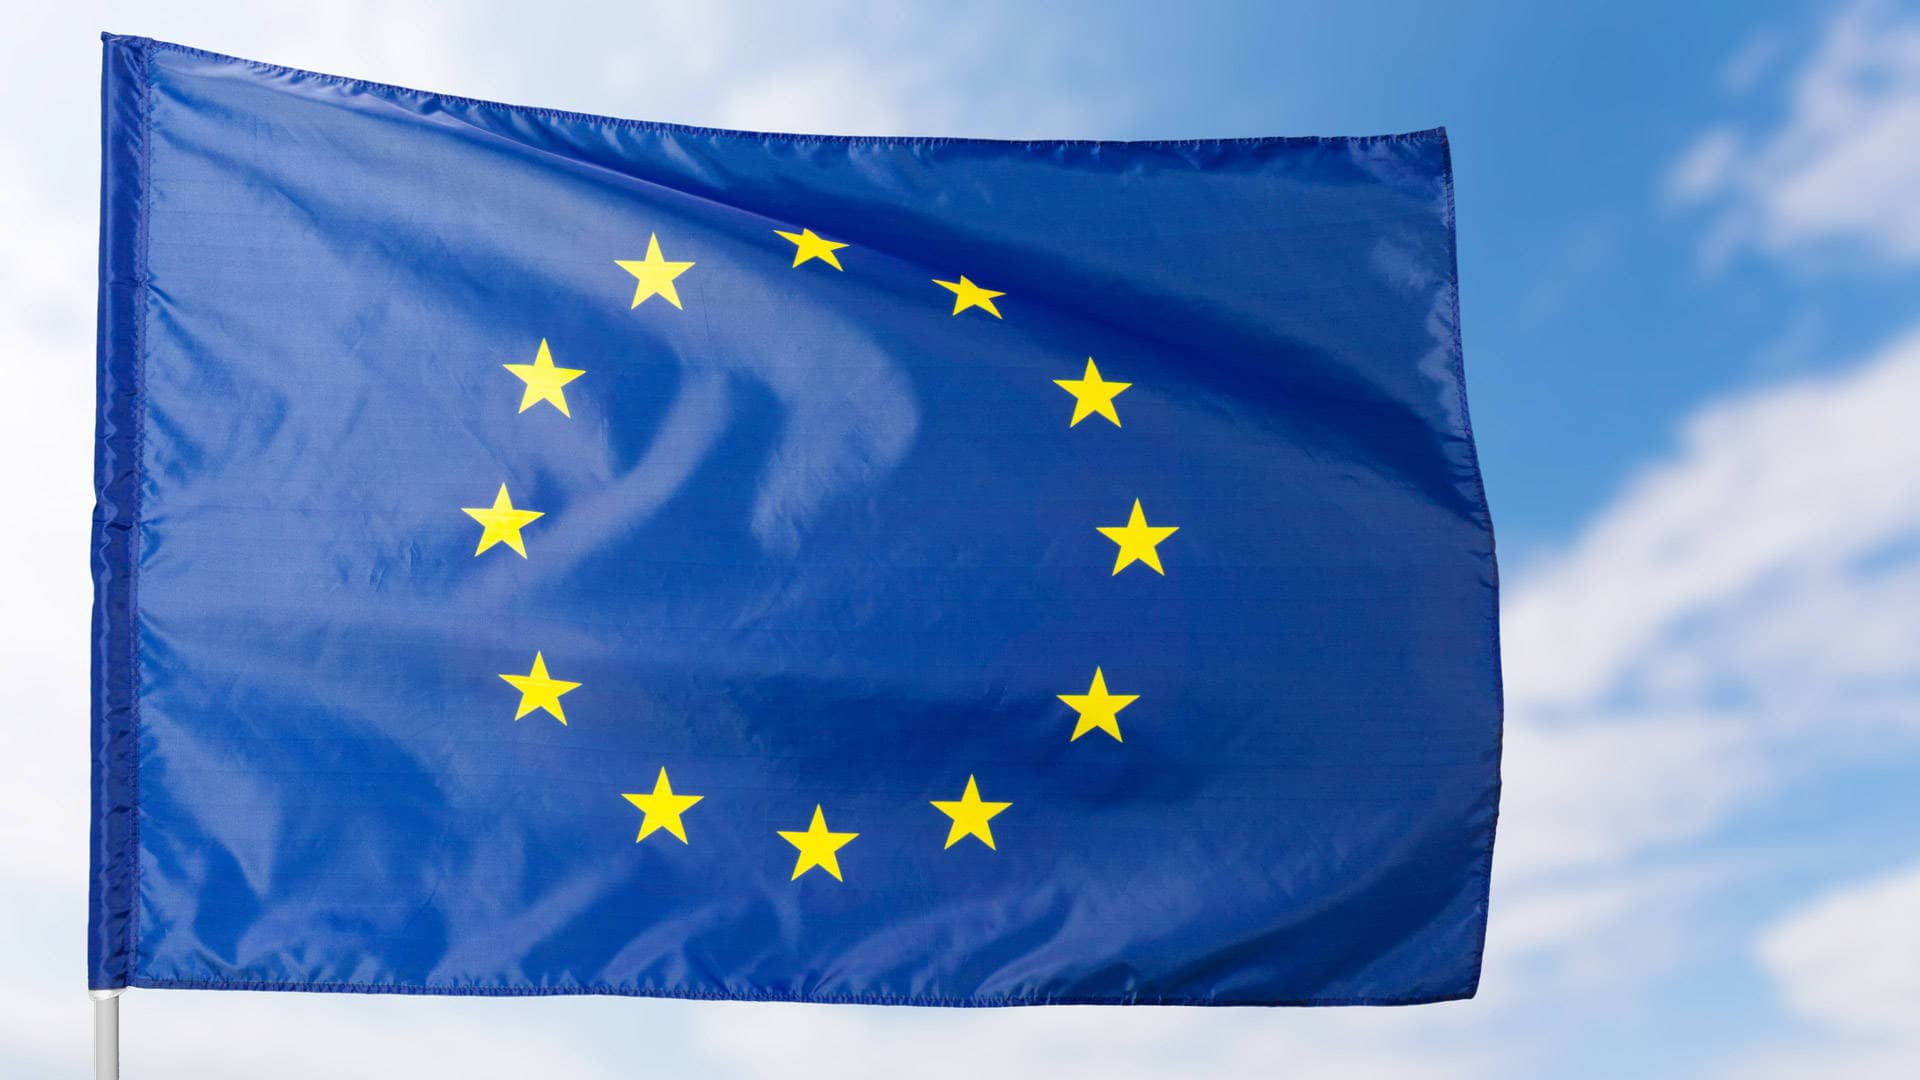 Die blaue Fahne der Europäischen Union mit gelben Sternen